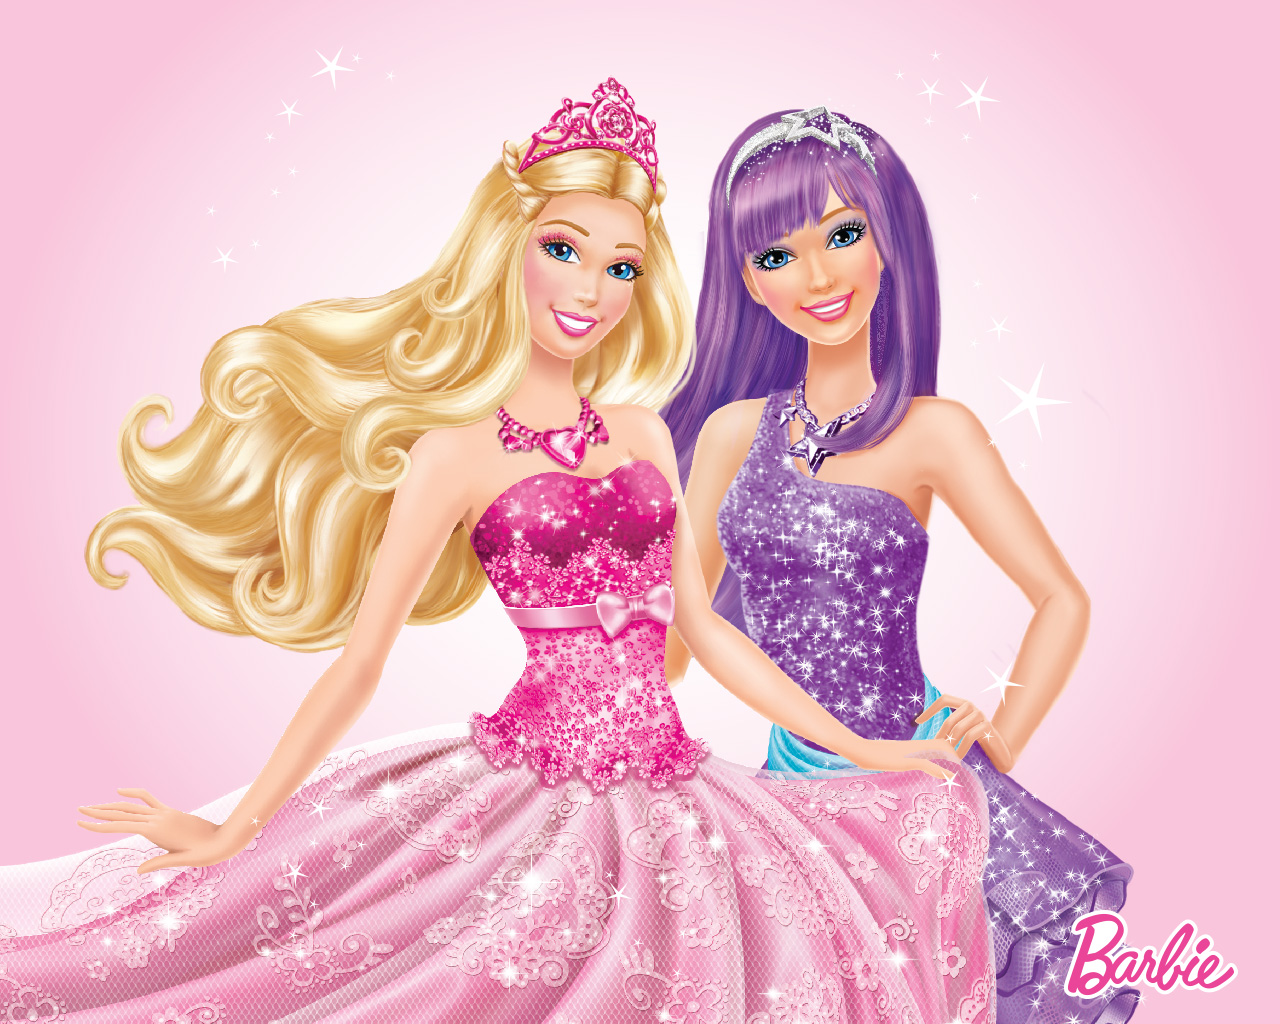 Koleksi Gambar Gambar Bergerak Barbie Terbaru 2018 Sapawarga